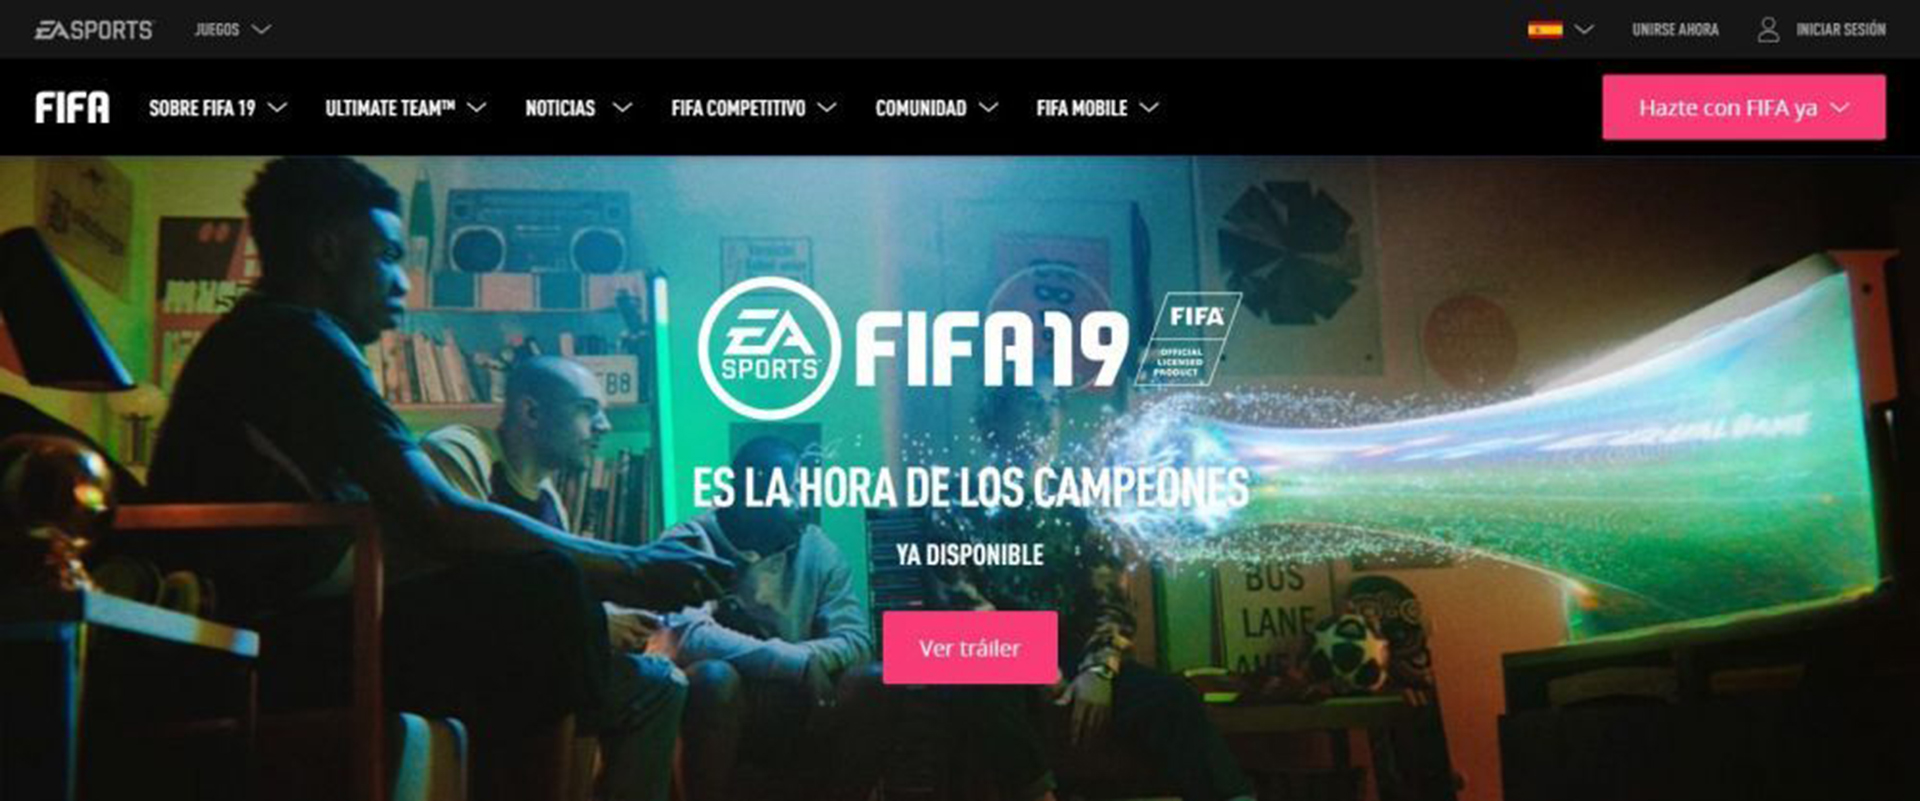 EA Sports imagen referencia FIFA 19 (Foto: Archivo / EA Sports)